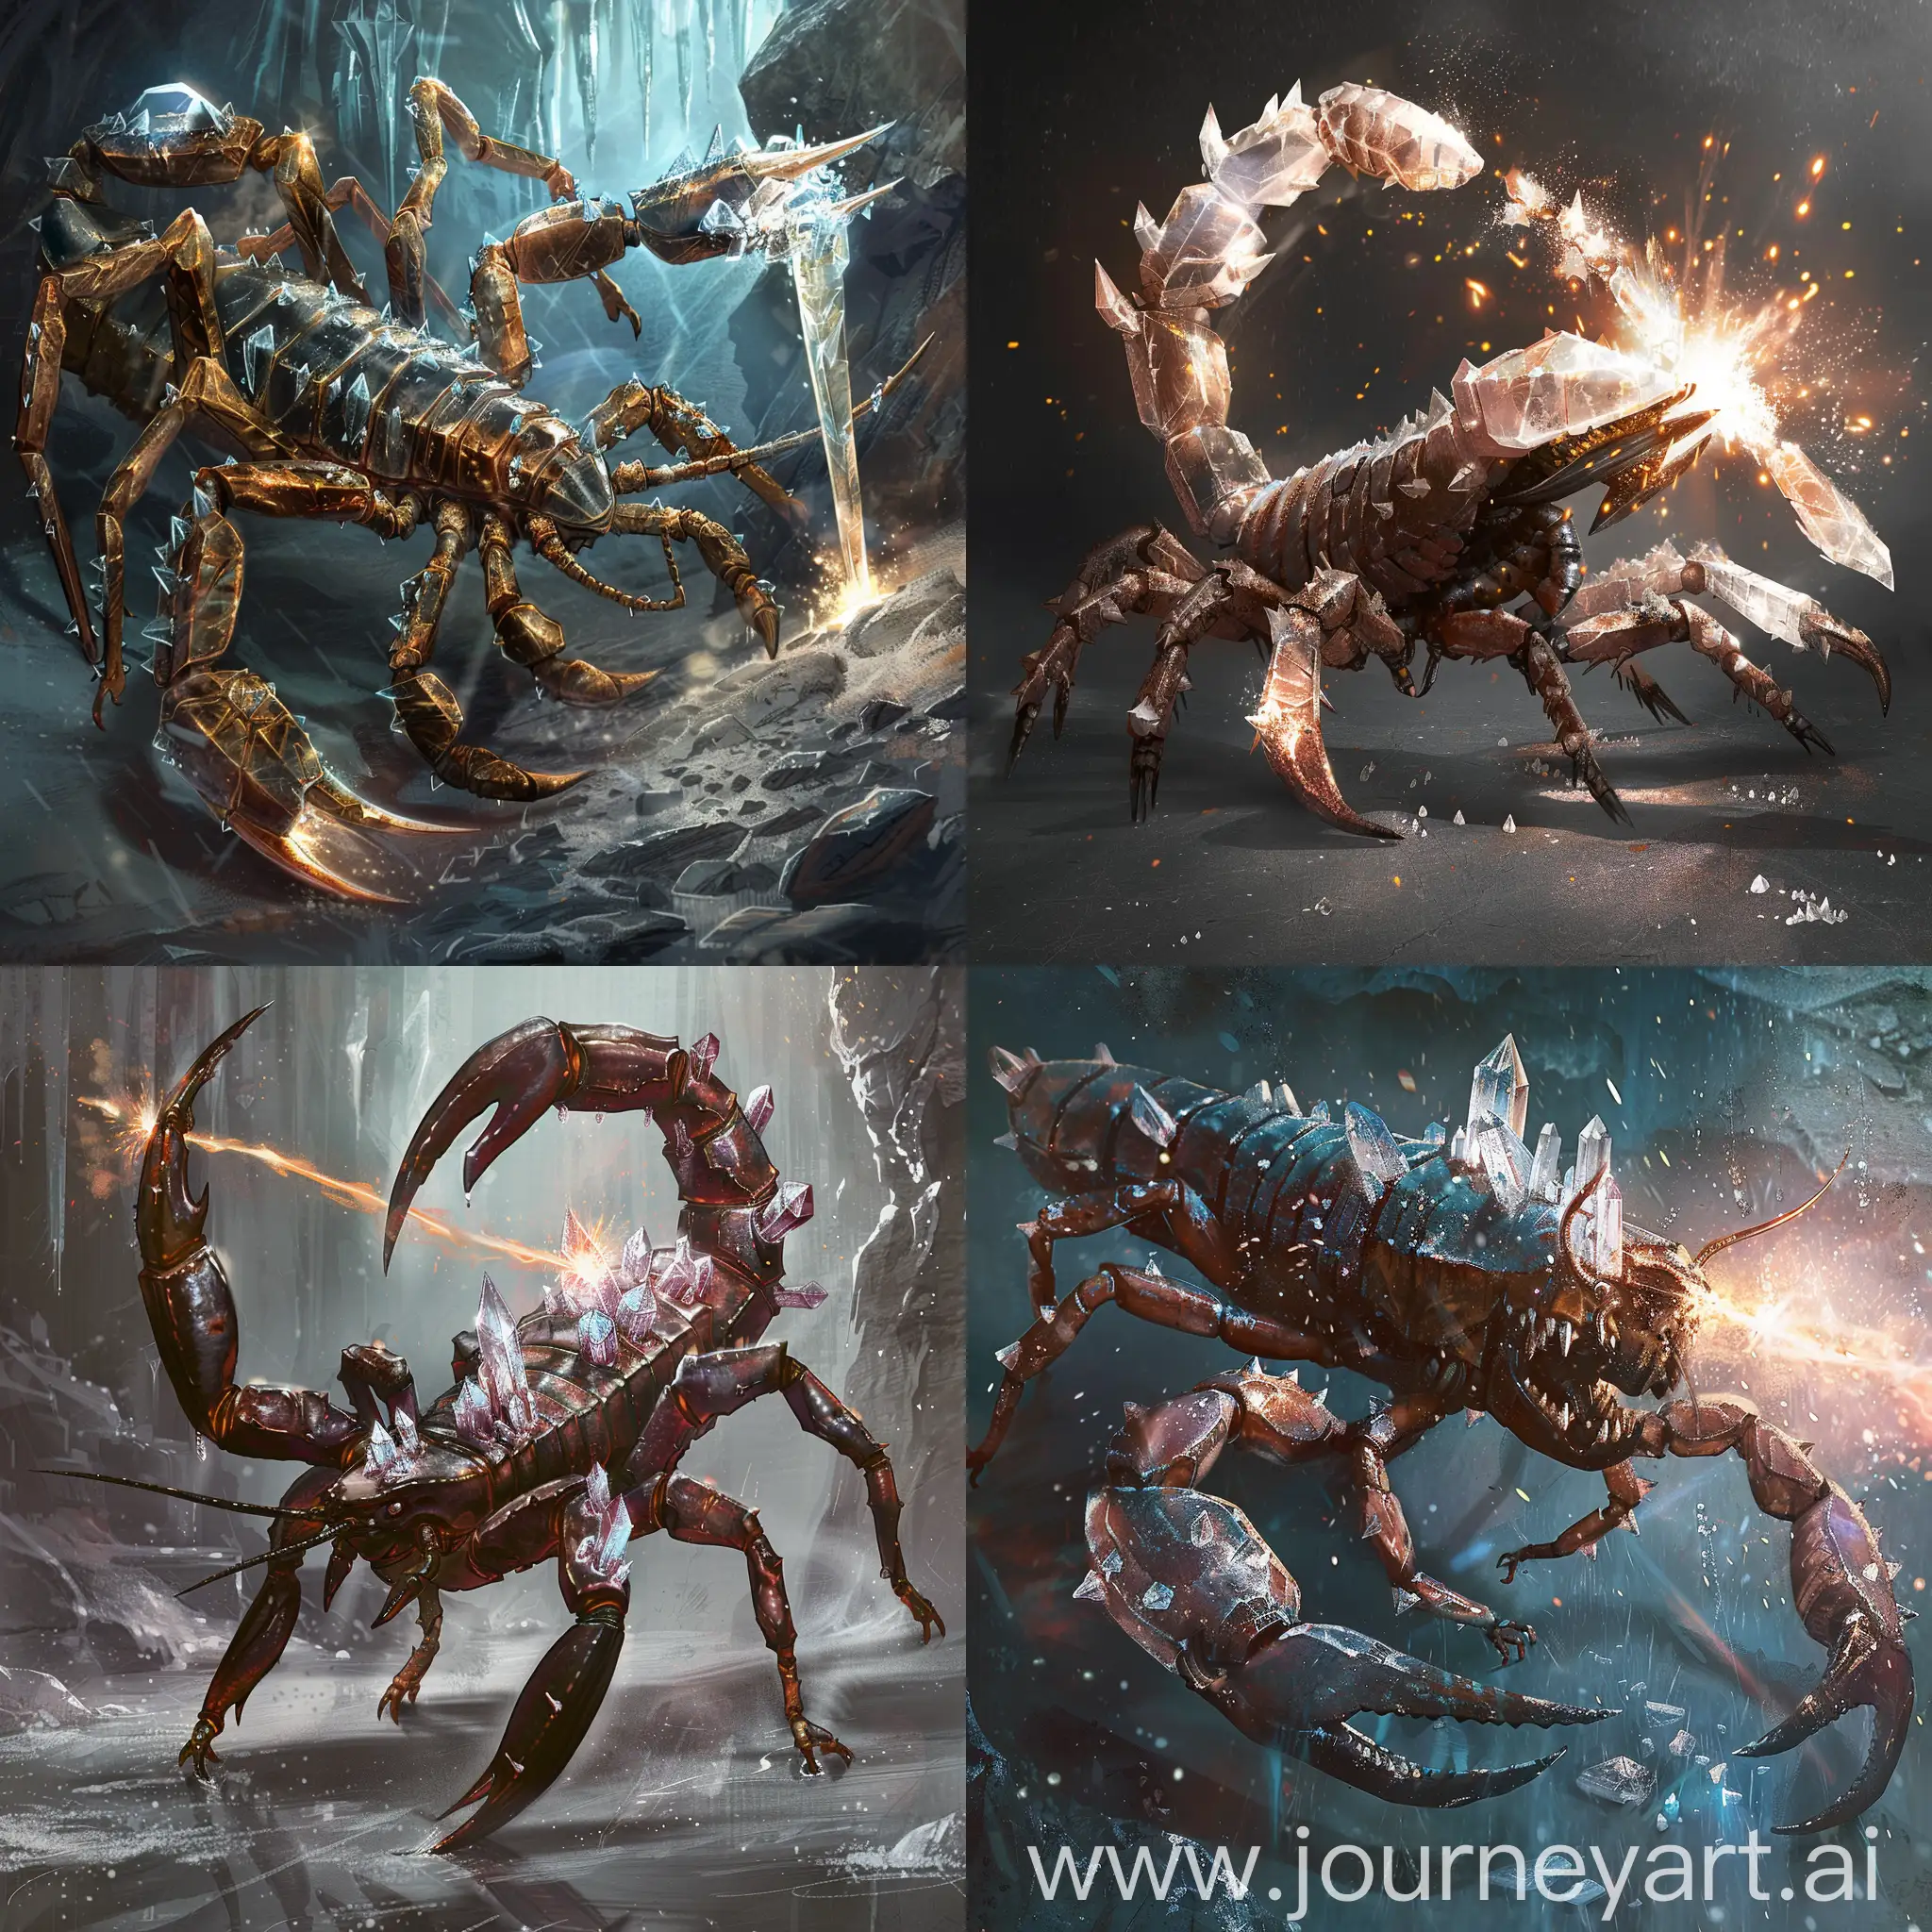 Кристаллические скорпионы - огромные скорпионы, покрытые острыми кристаллами, способные стрелять ими в своих противников.